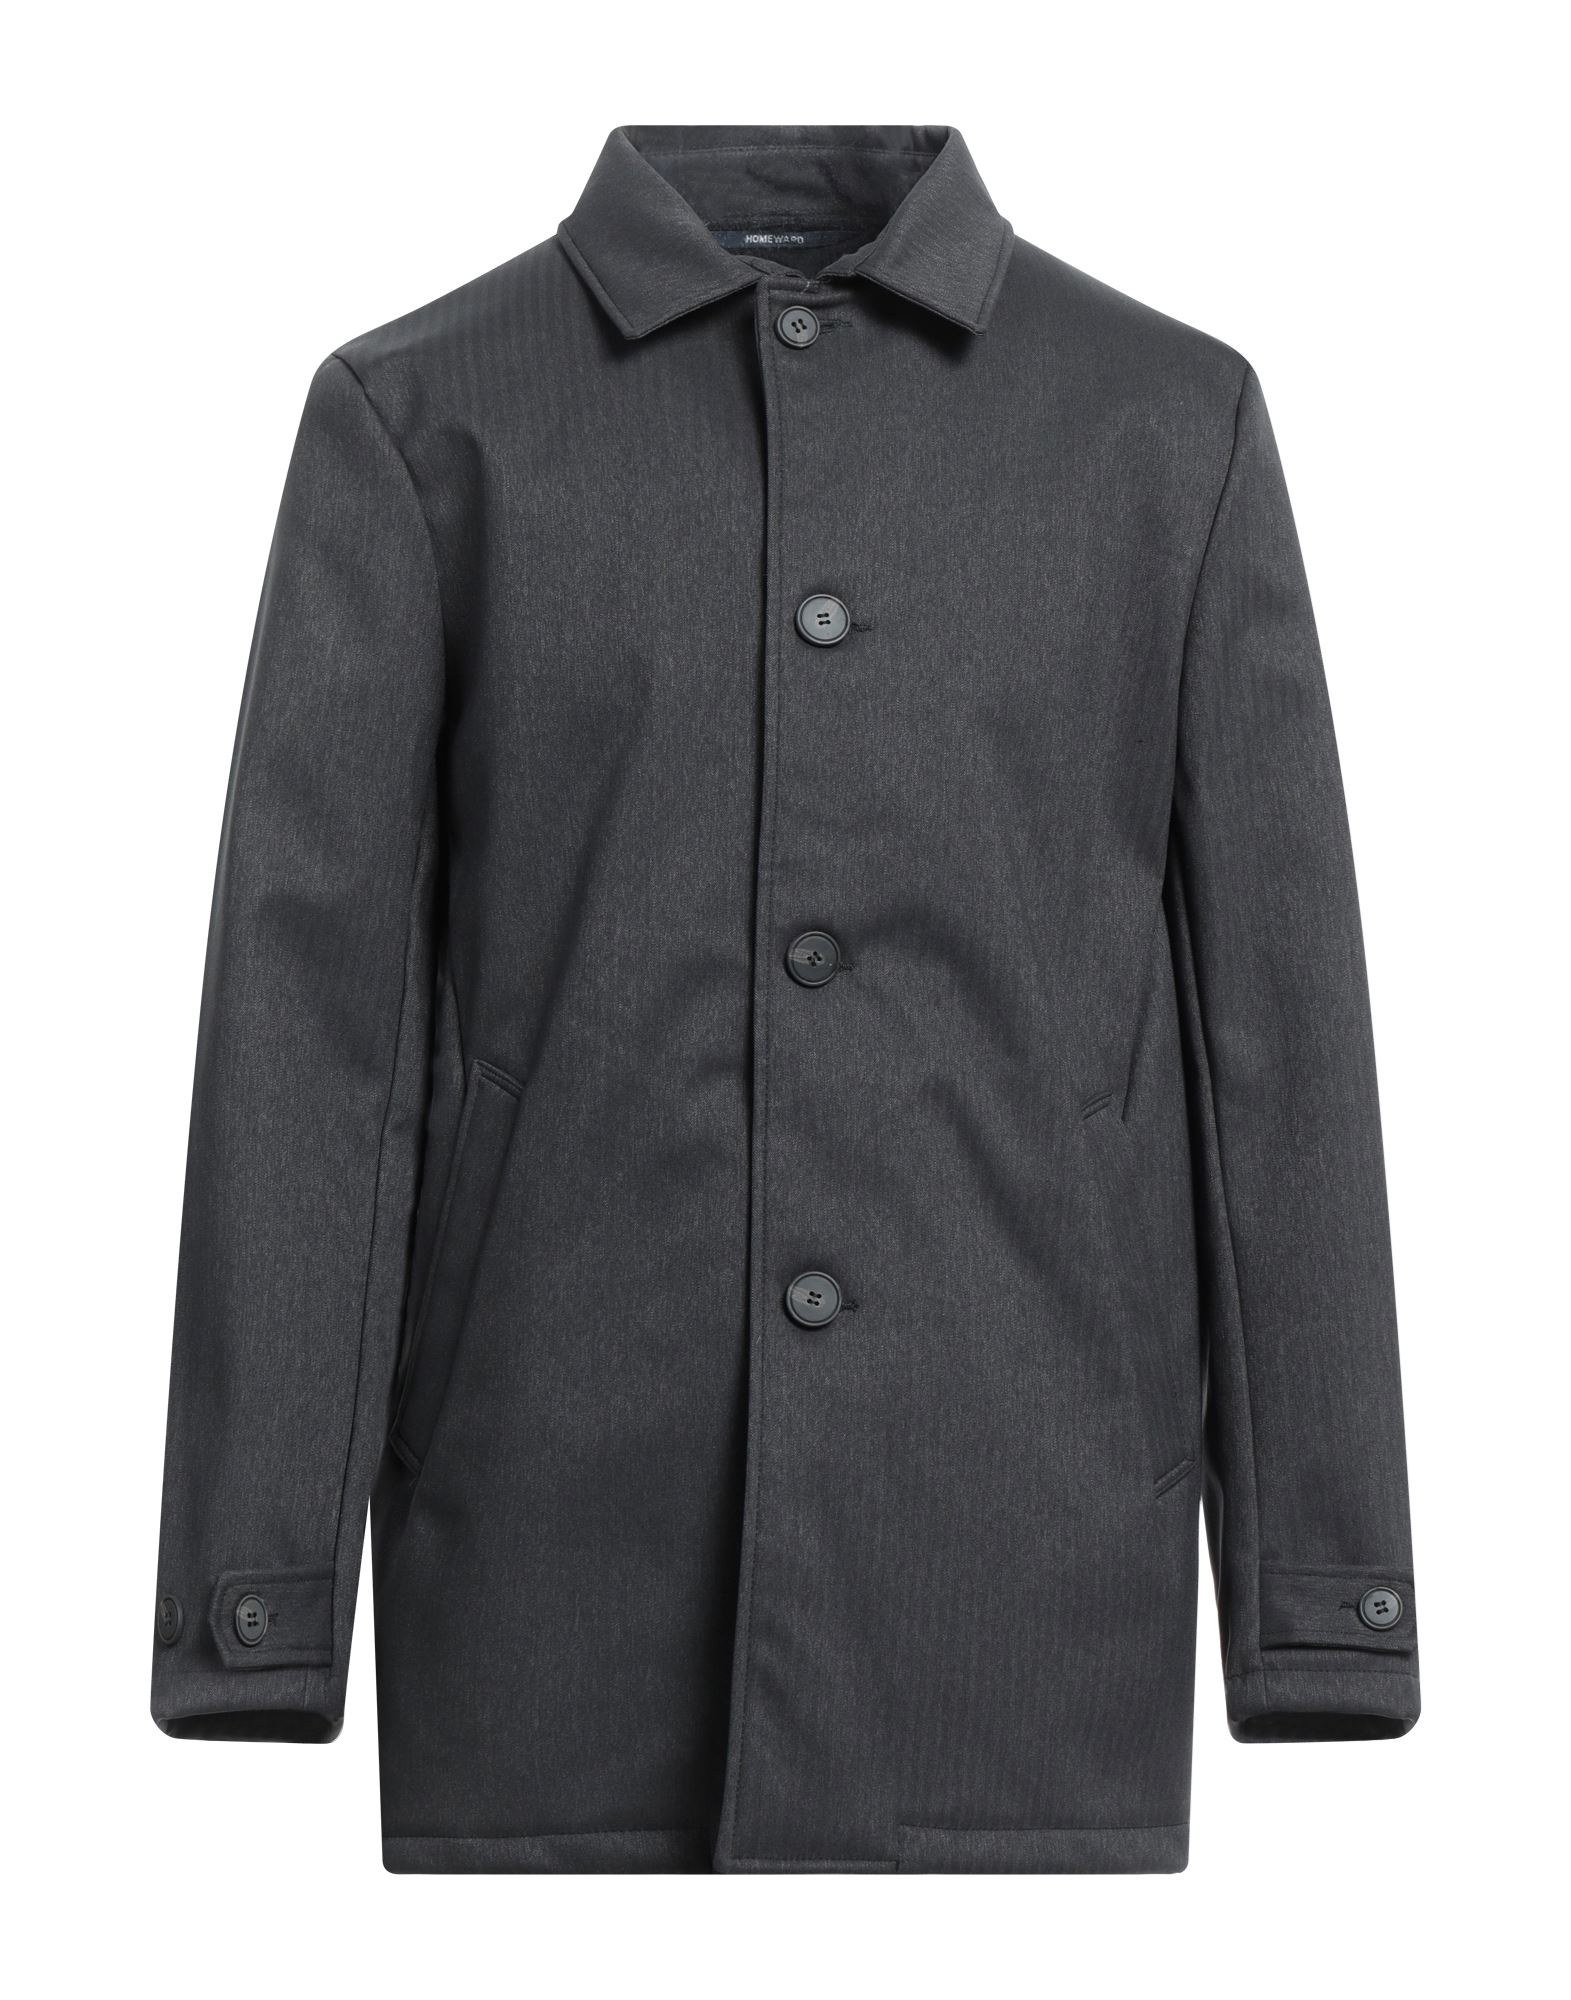 Homeward Clothes Coats In Grey